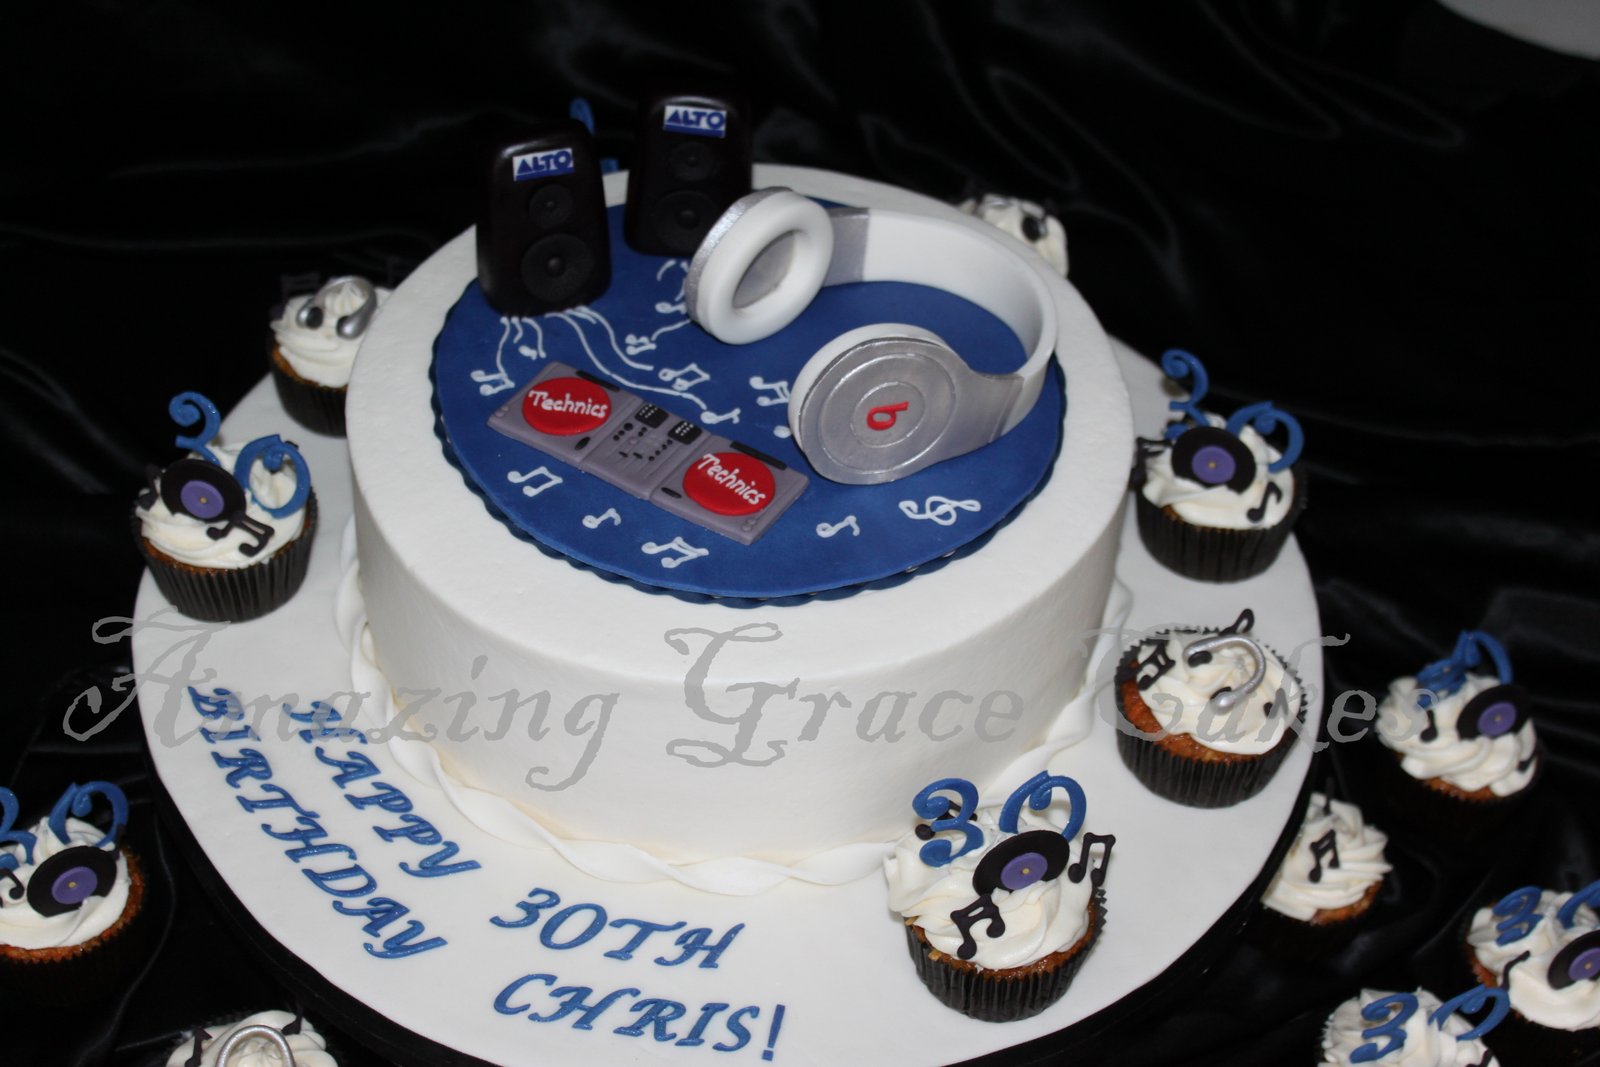 Happy Birthday DJ Cake